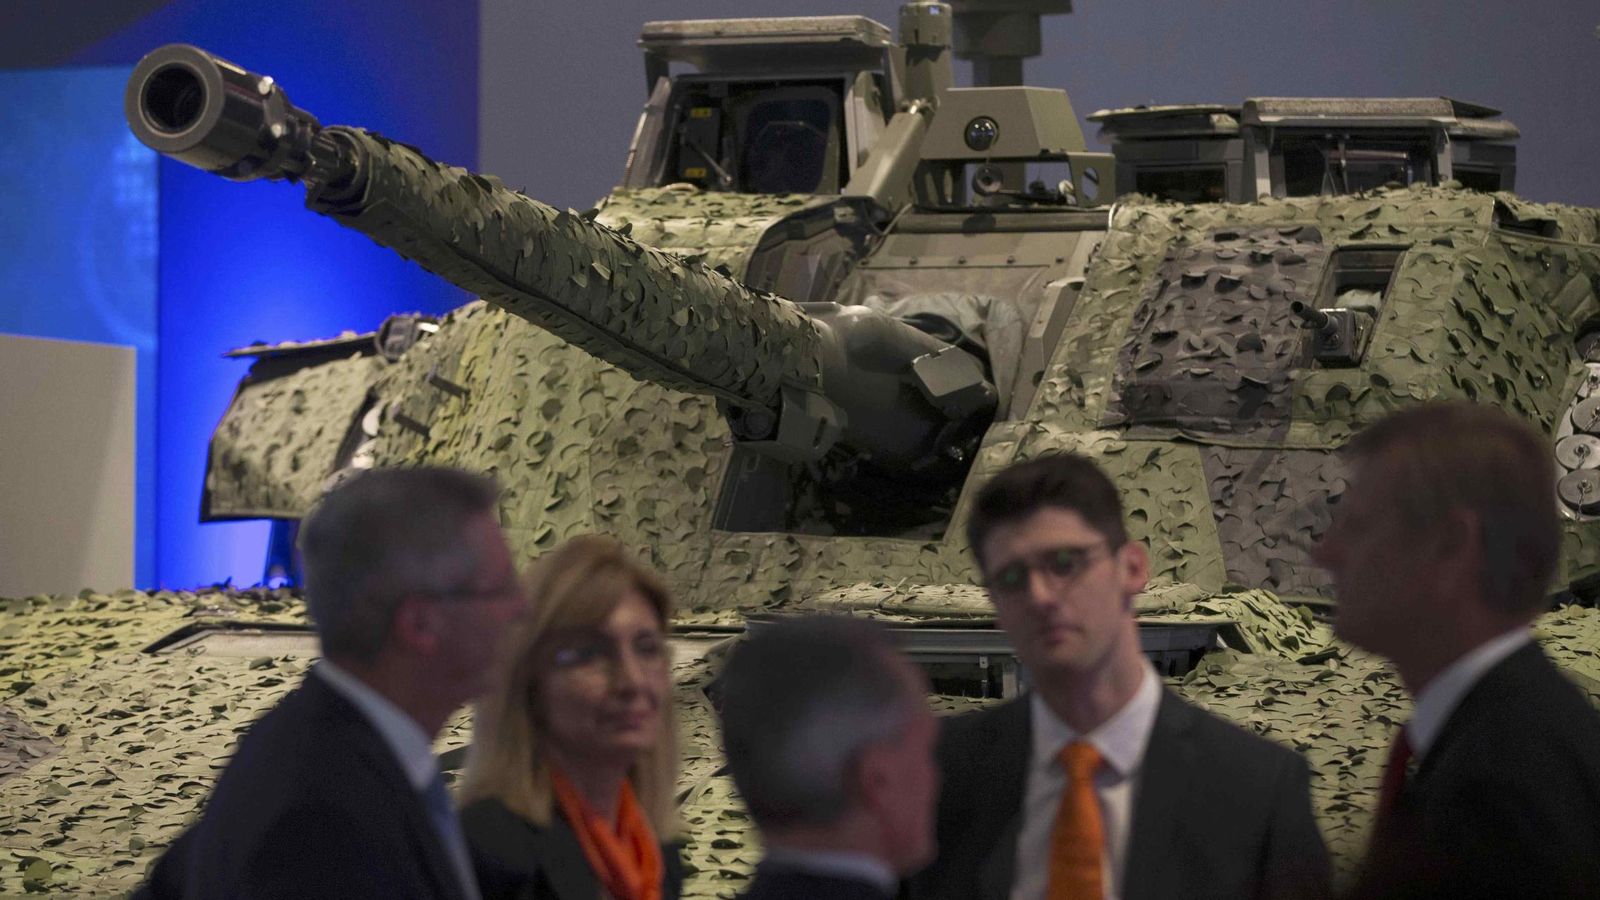 Foto: Un grupo de vendedores conversa frente a un tanque en la Feria Internacional de Equipos de Defensa y Seguridad de Londres, el 16 de septiembre de 2015. (Reuters)